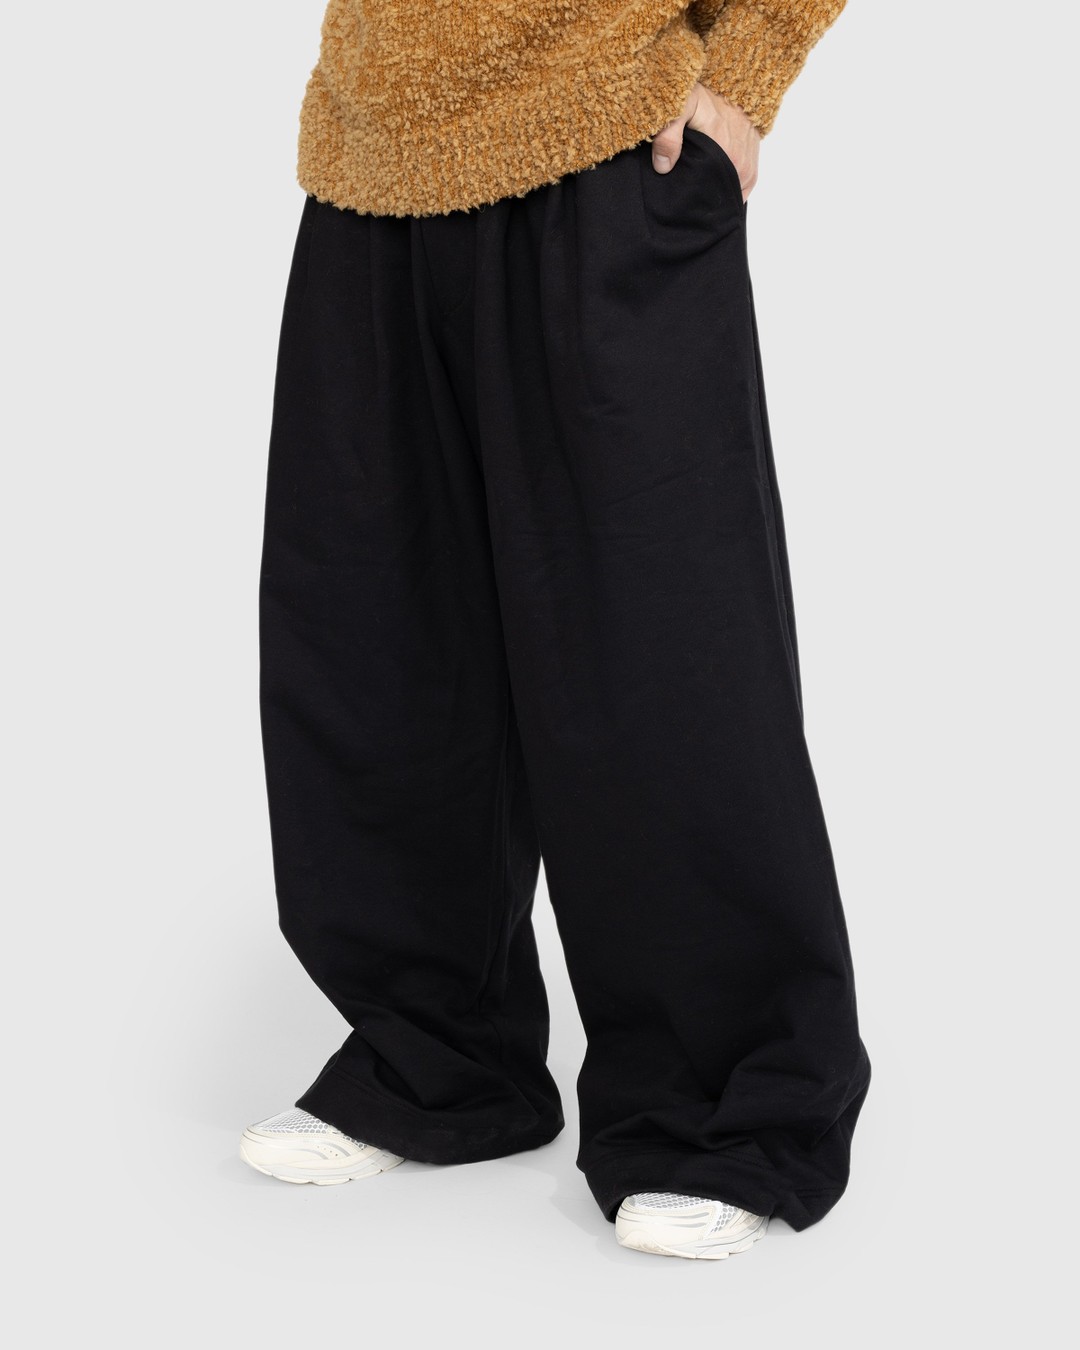 Dries van Noten – Hama Cotton Jersey Pants Black - Tops - Black - Image 2